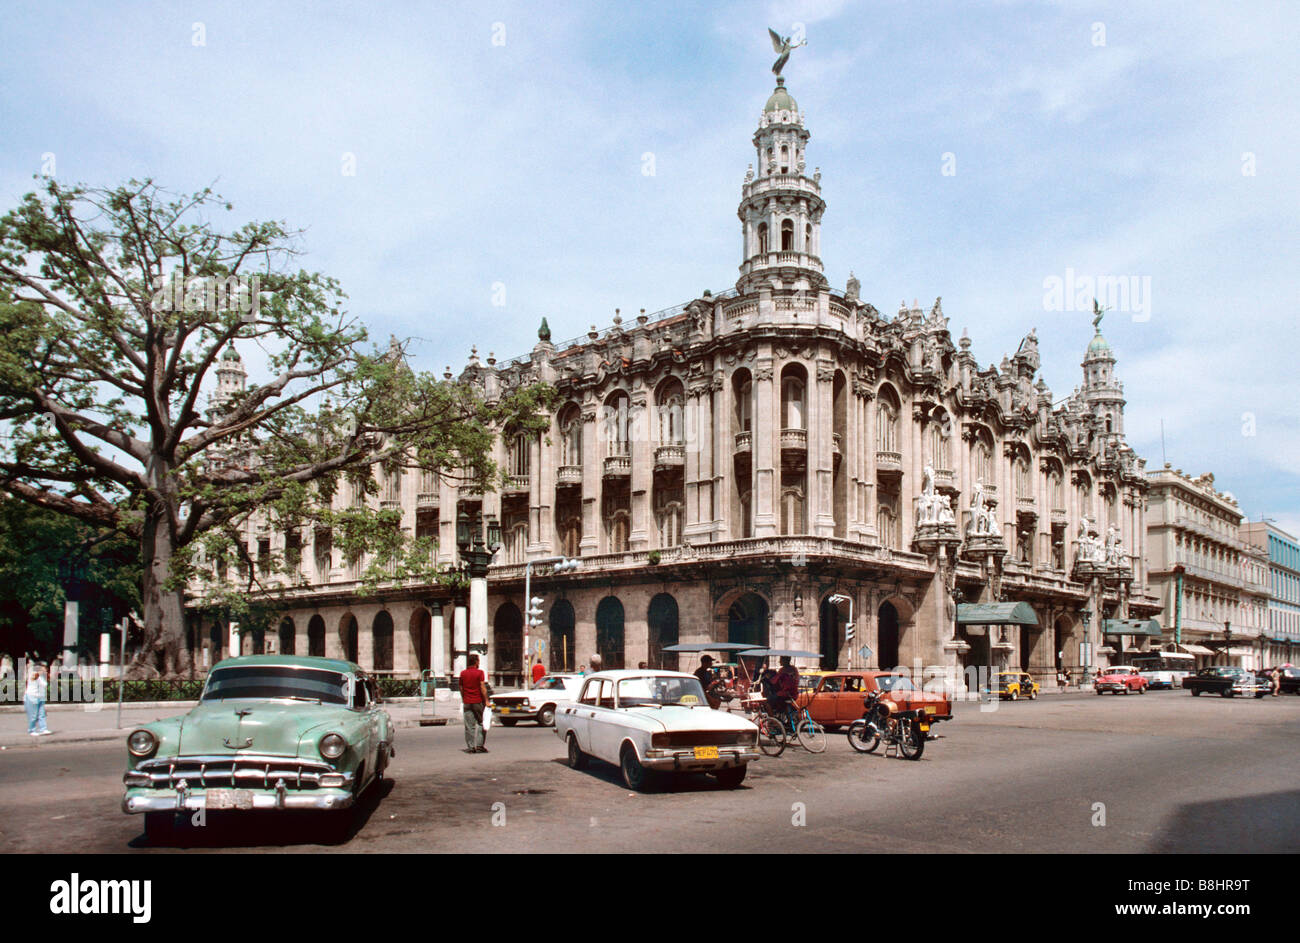 Gran Teatro de la Habana, ex centro galiziano, sede del Balletto Nazionale Cubano. Foto Stock